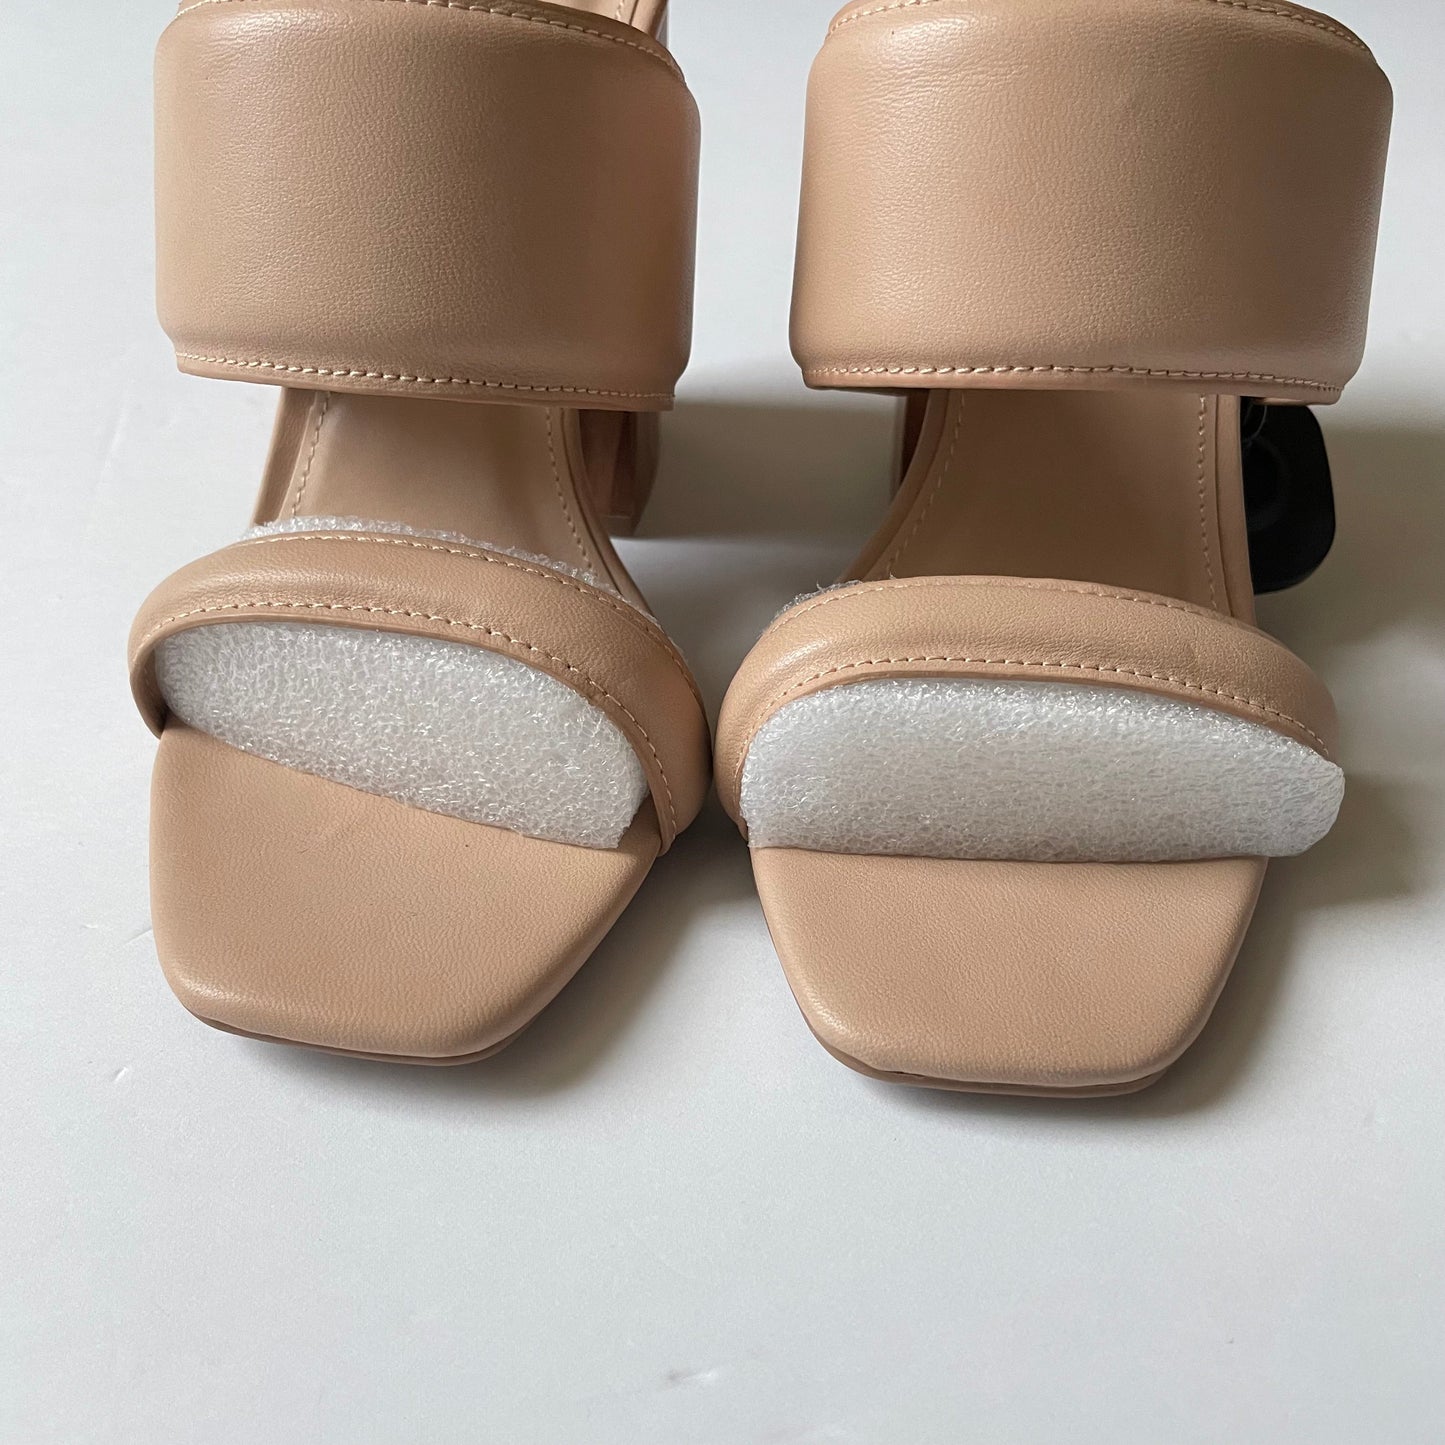 Tan Shoes Heels Block Qupid, Size 10